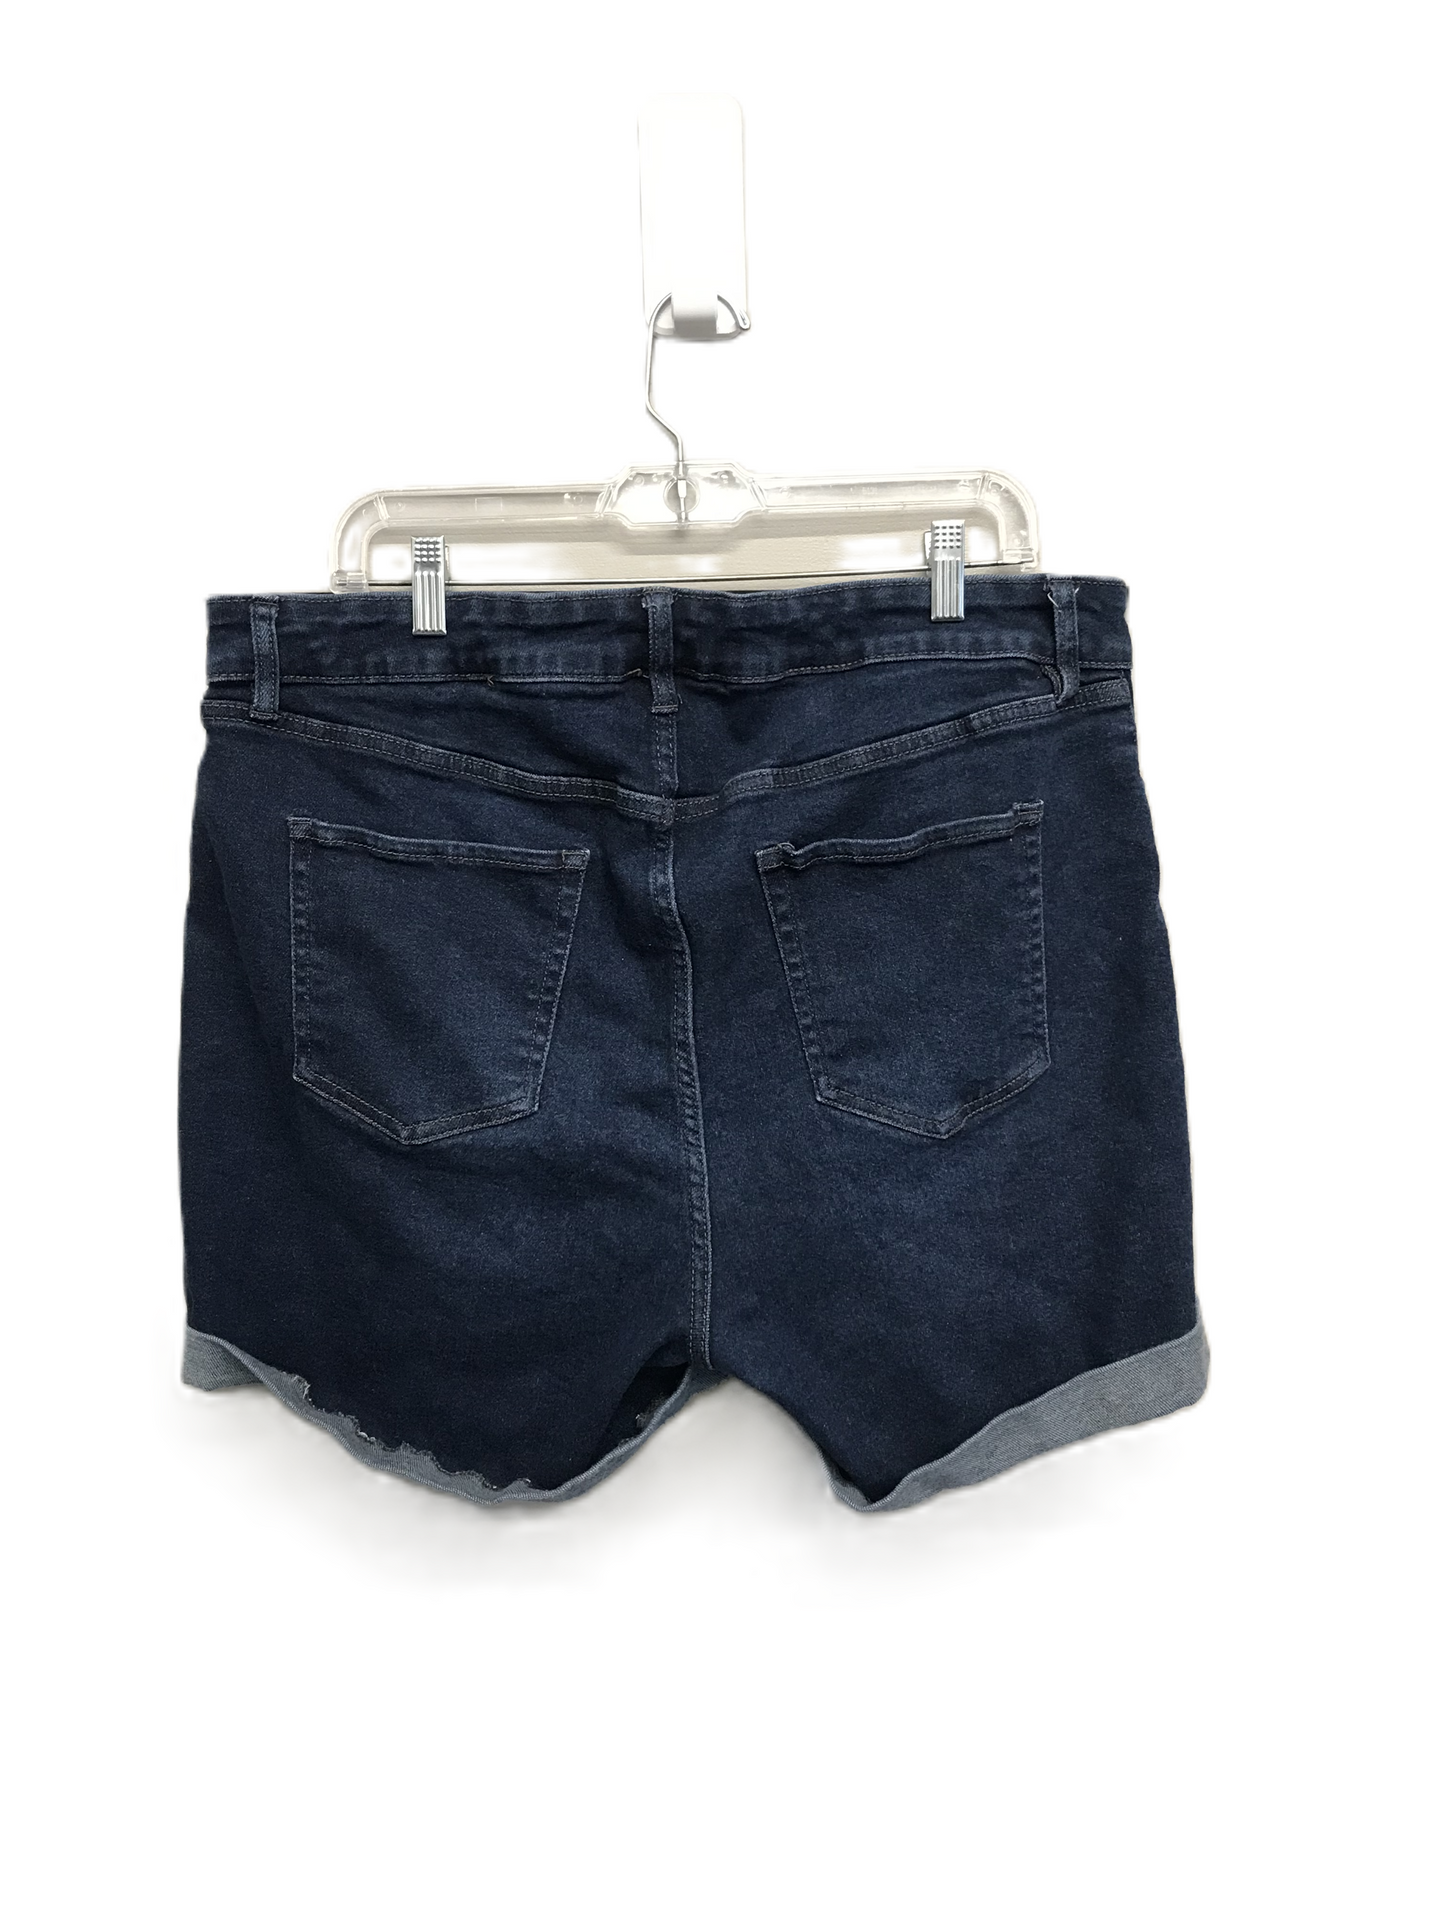 Blue Denim Shorts By Ava & Viv, Size: 16